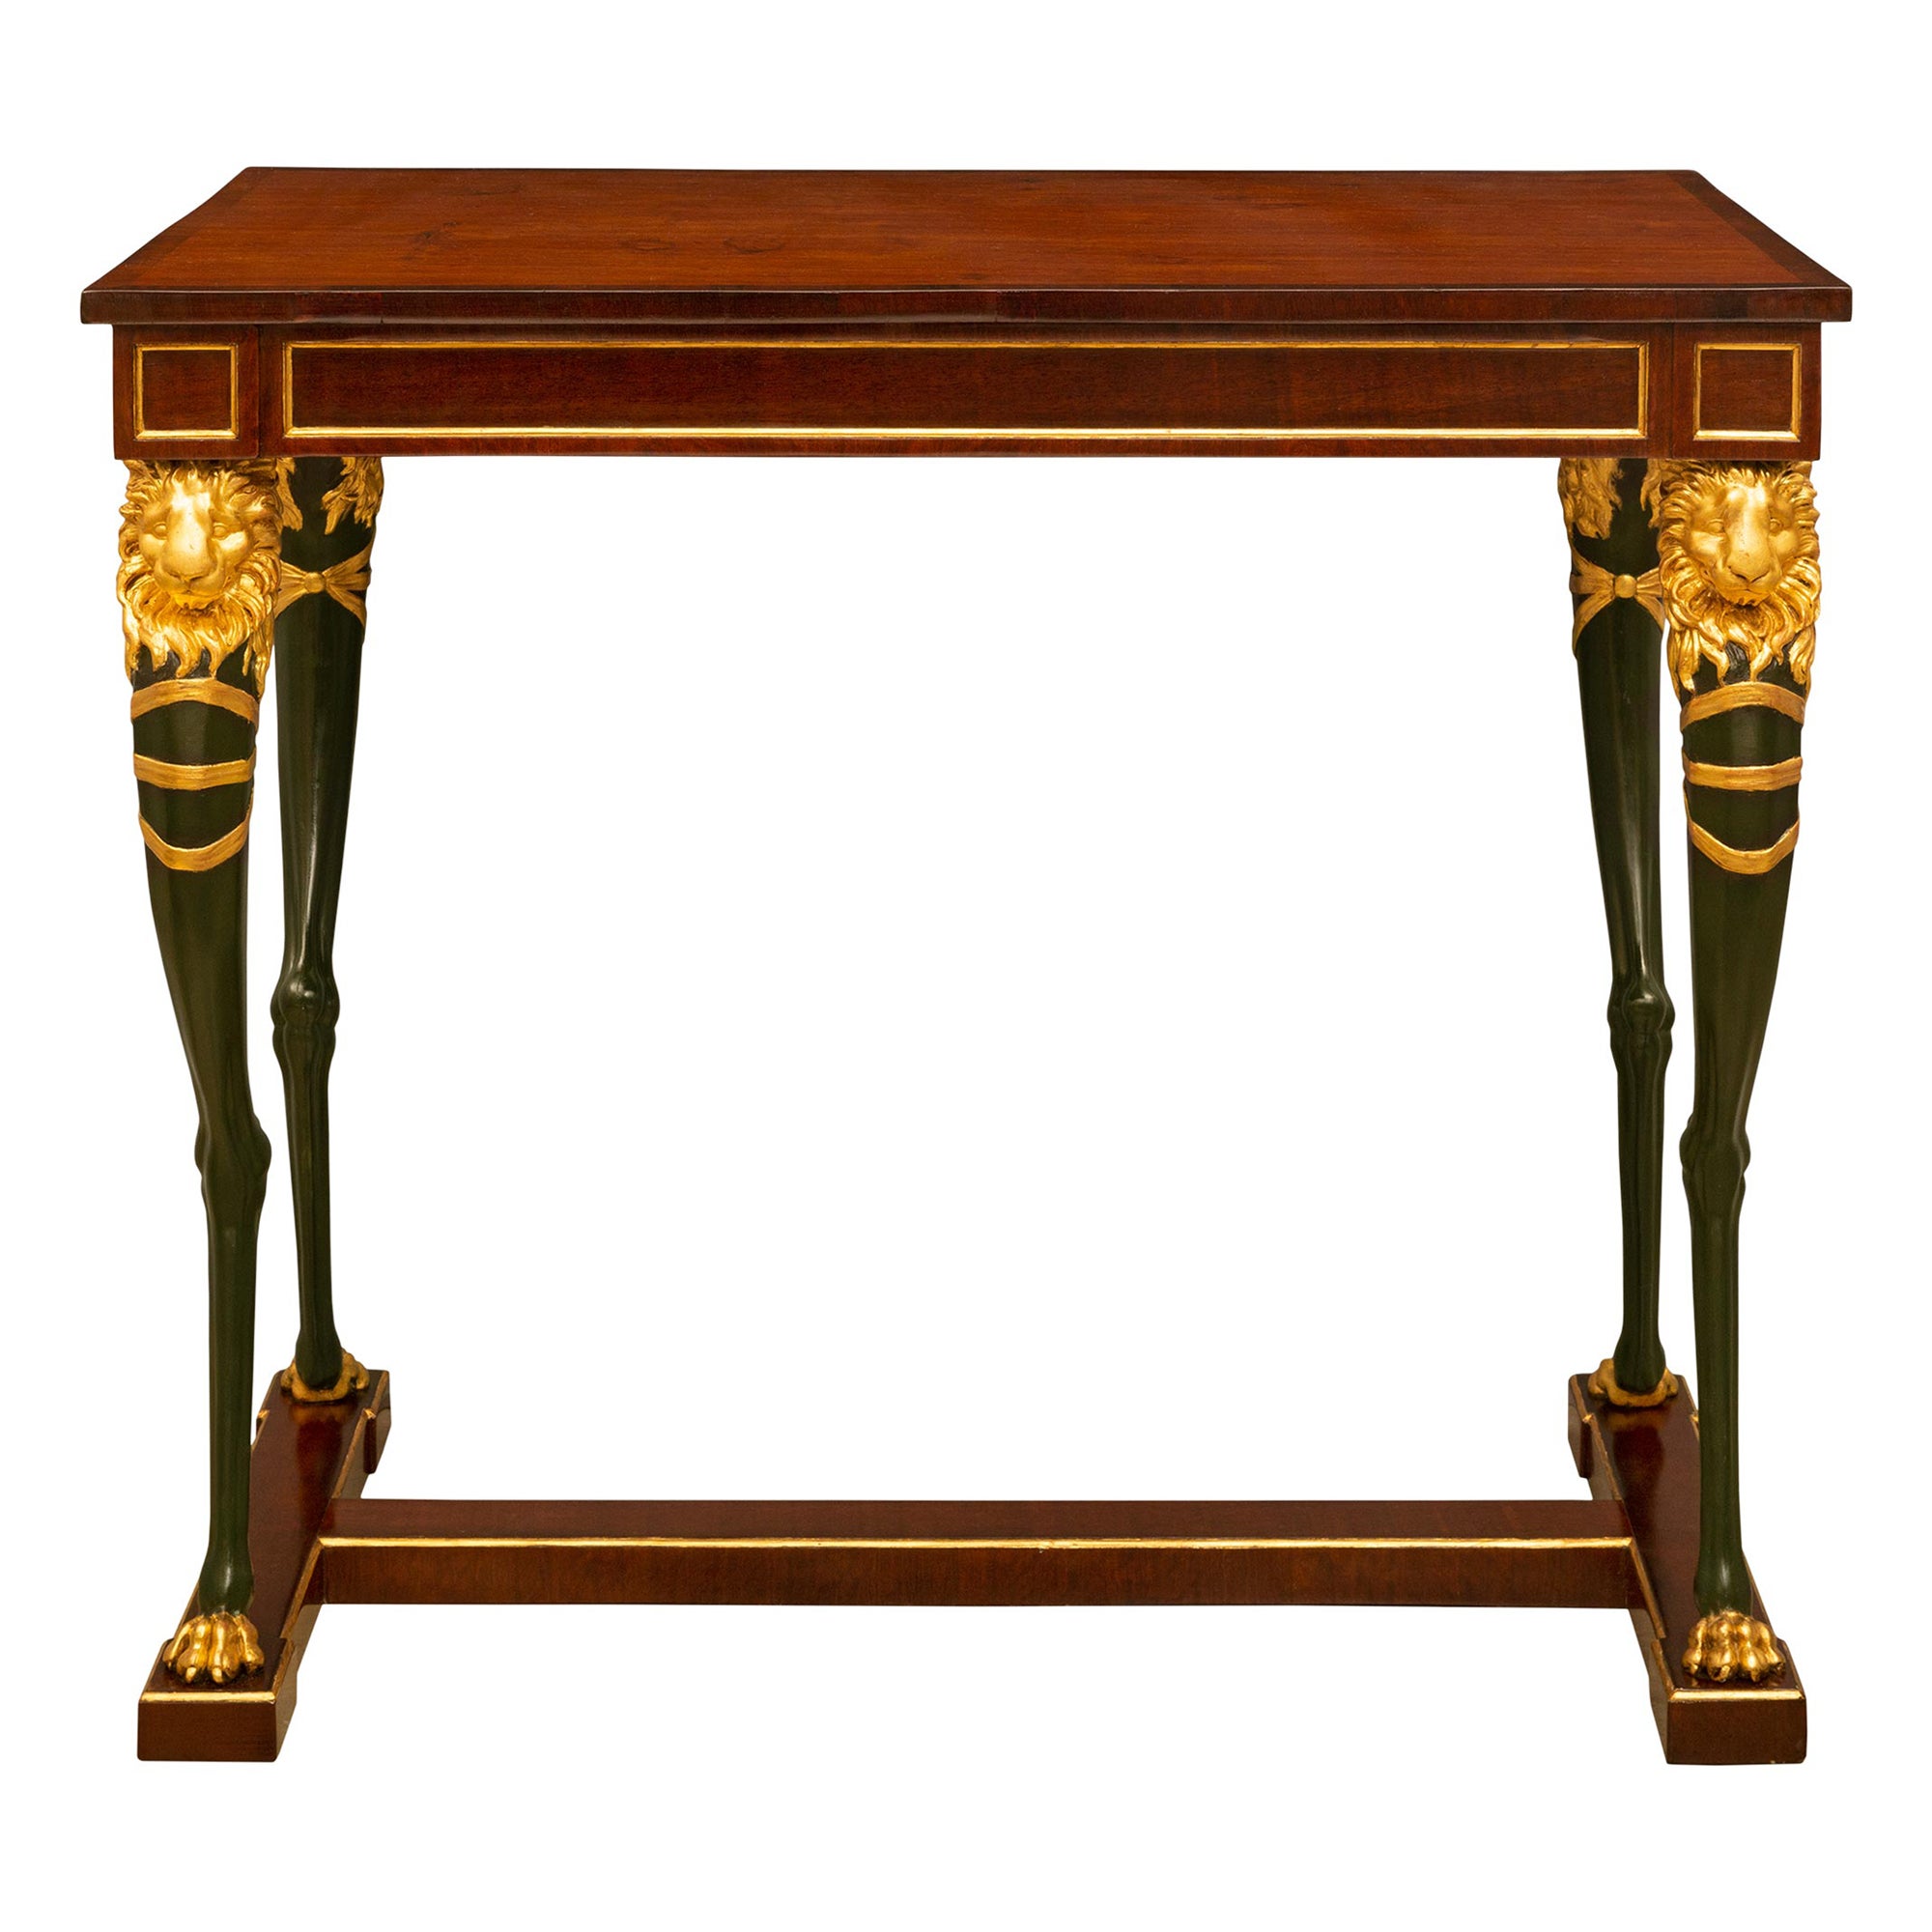 Table centrale suédoise de style Empire du XIXe siècle en acajou, polychrome et bois doré